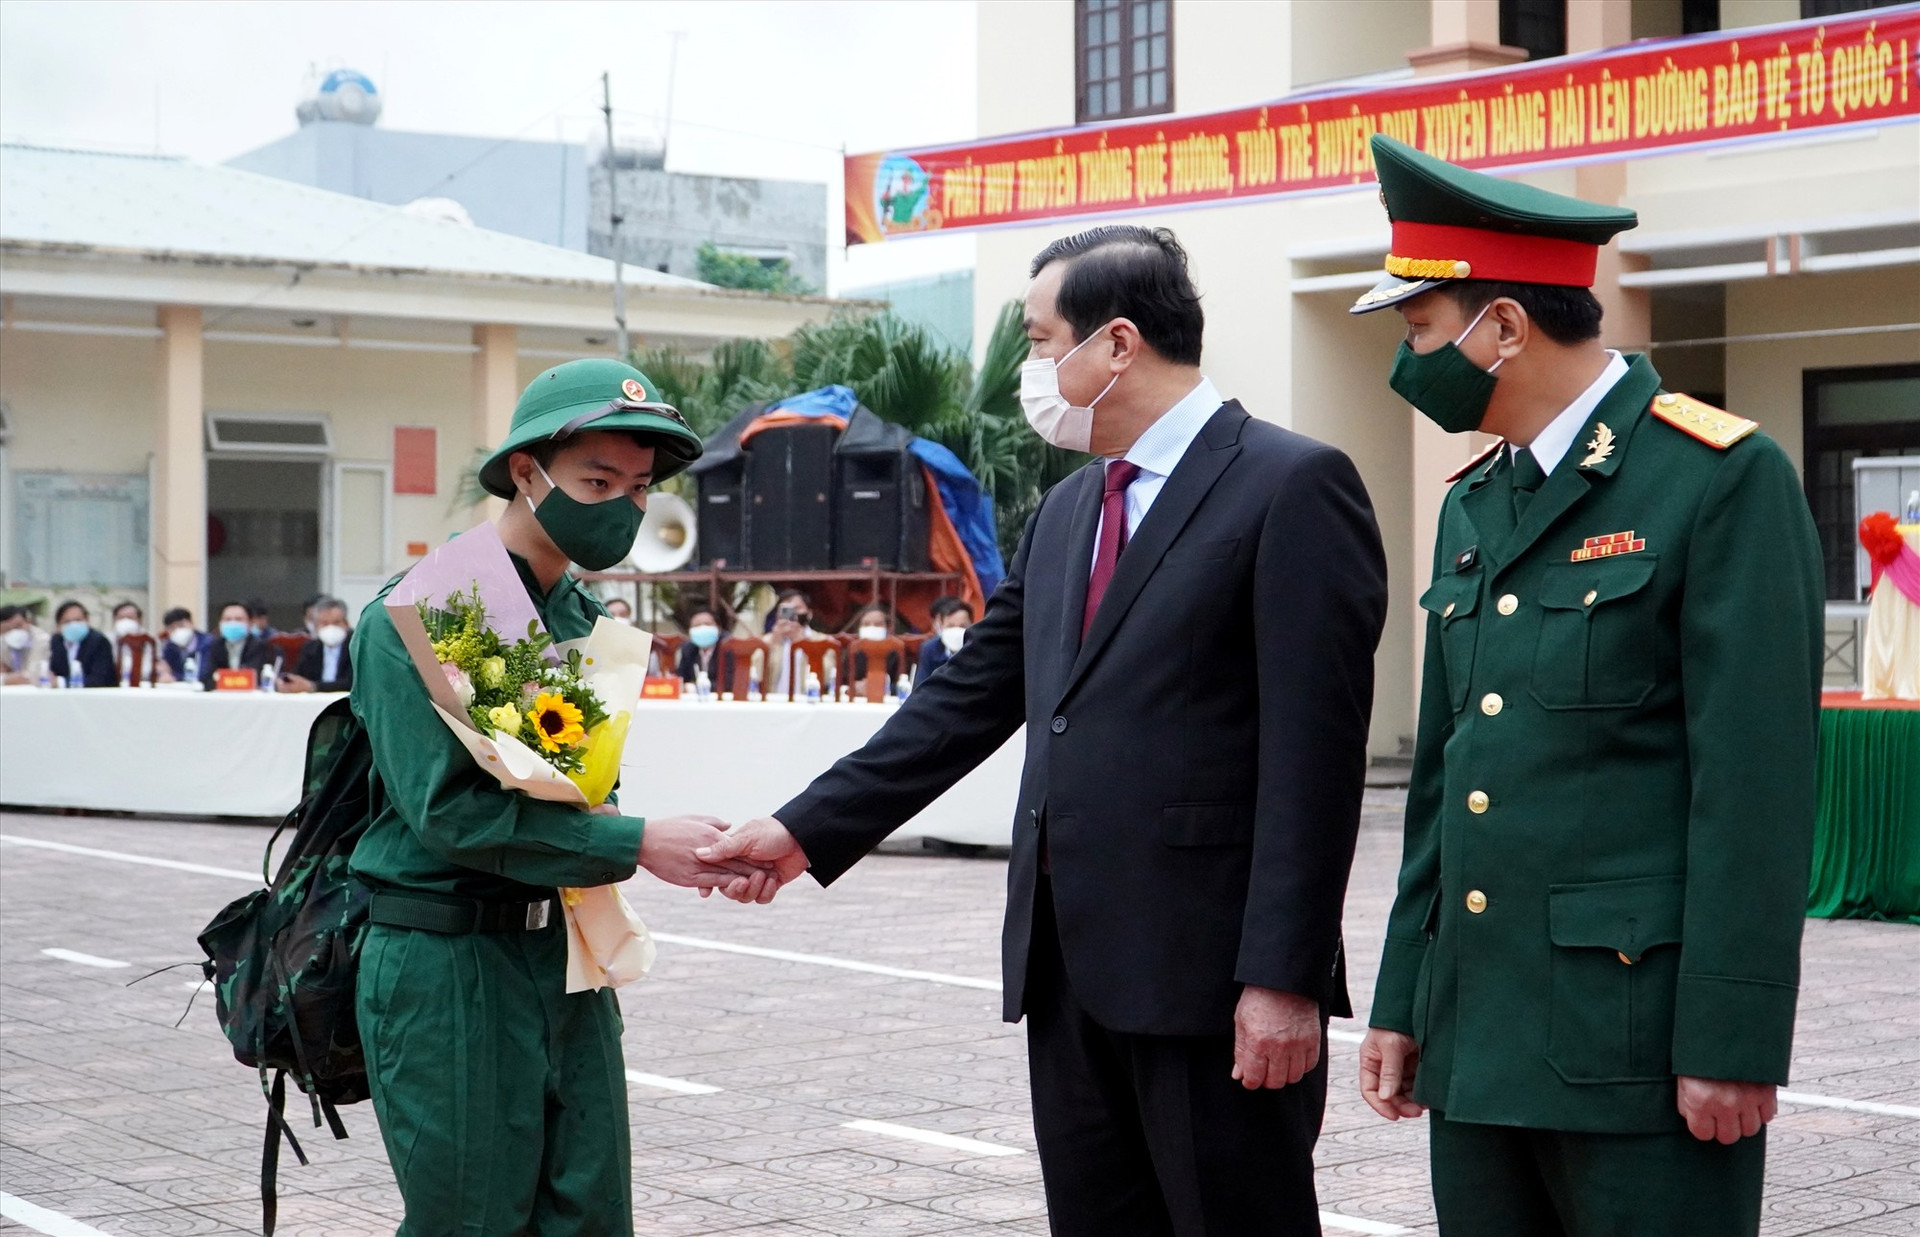 - Đồng chí Phan Việt Cường tặng hoa, động viên các chiến sĩ lên đường nhập ngũ